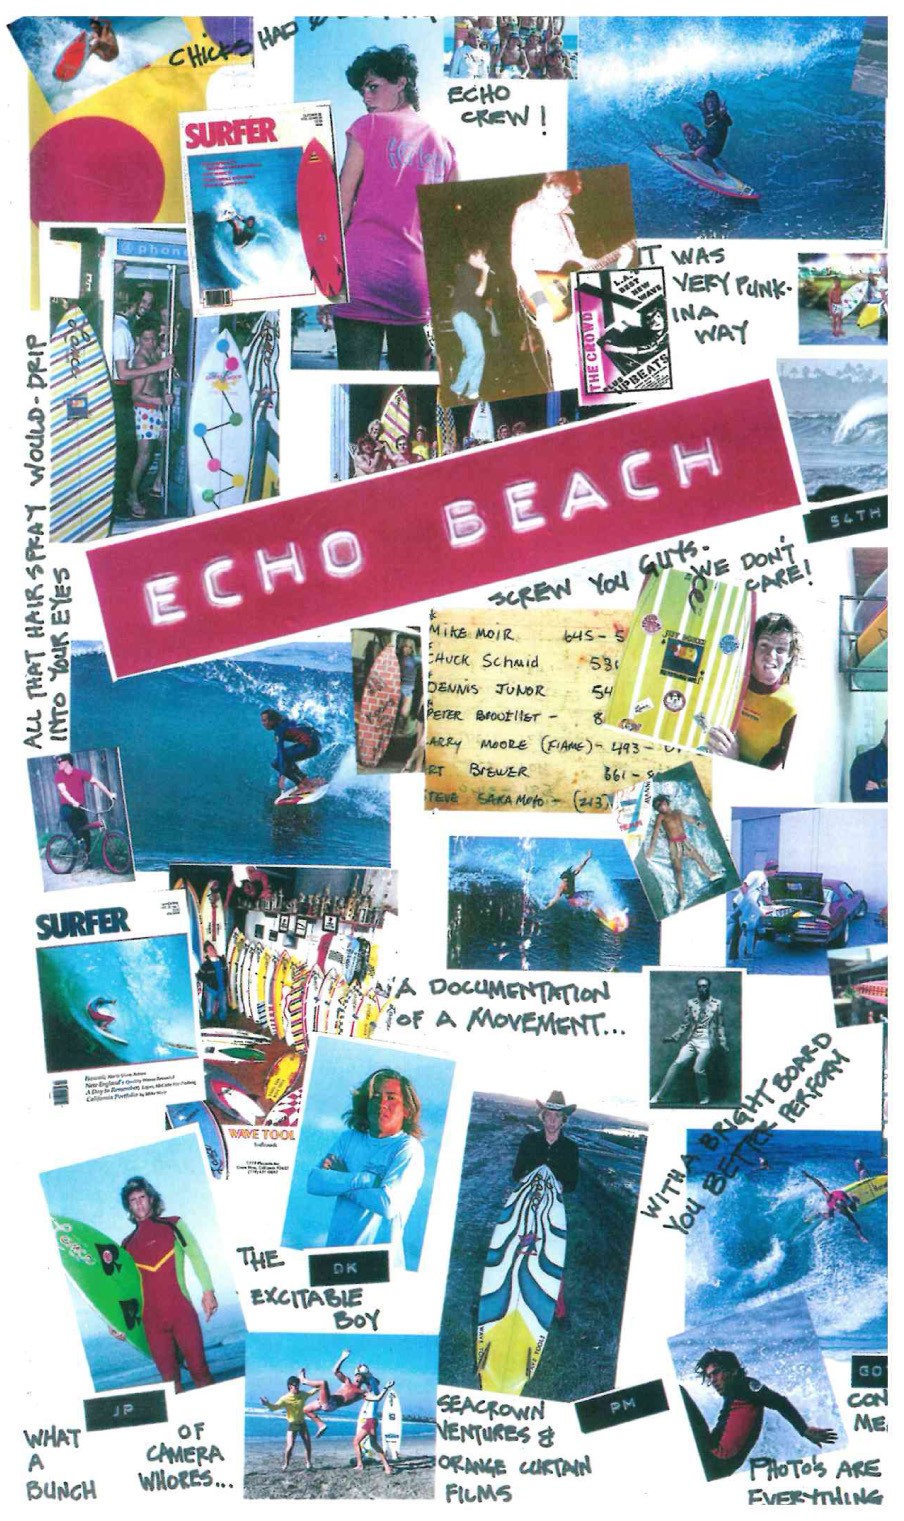 Dvd Echo Beach - Una documentación de un movimiento - por Jeff Parker